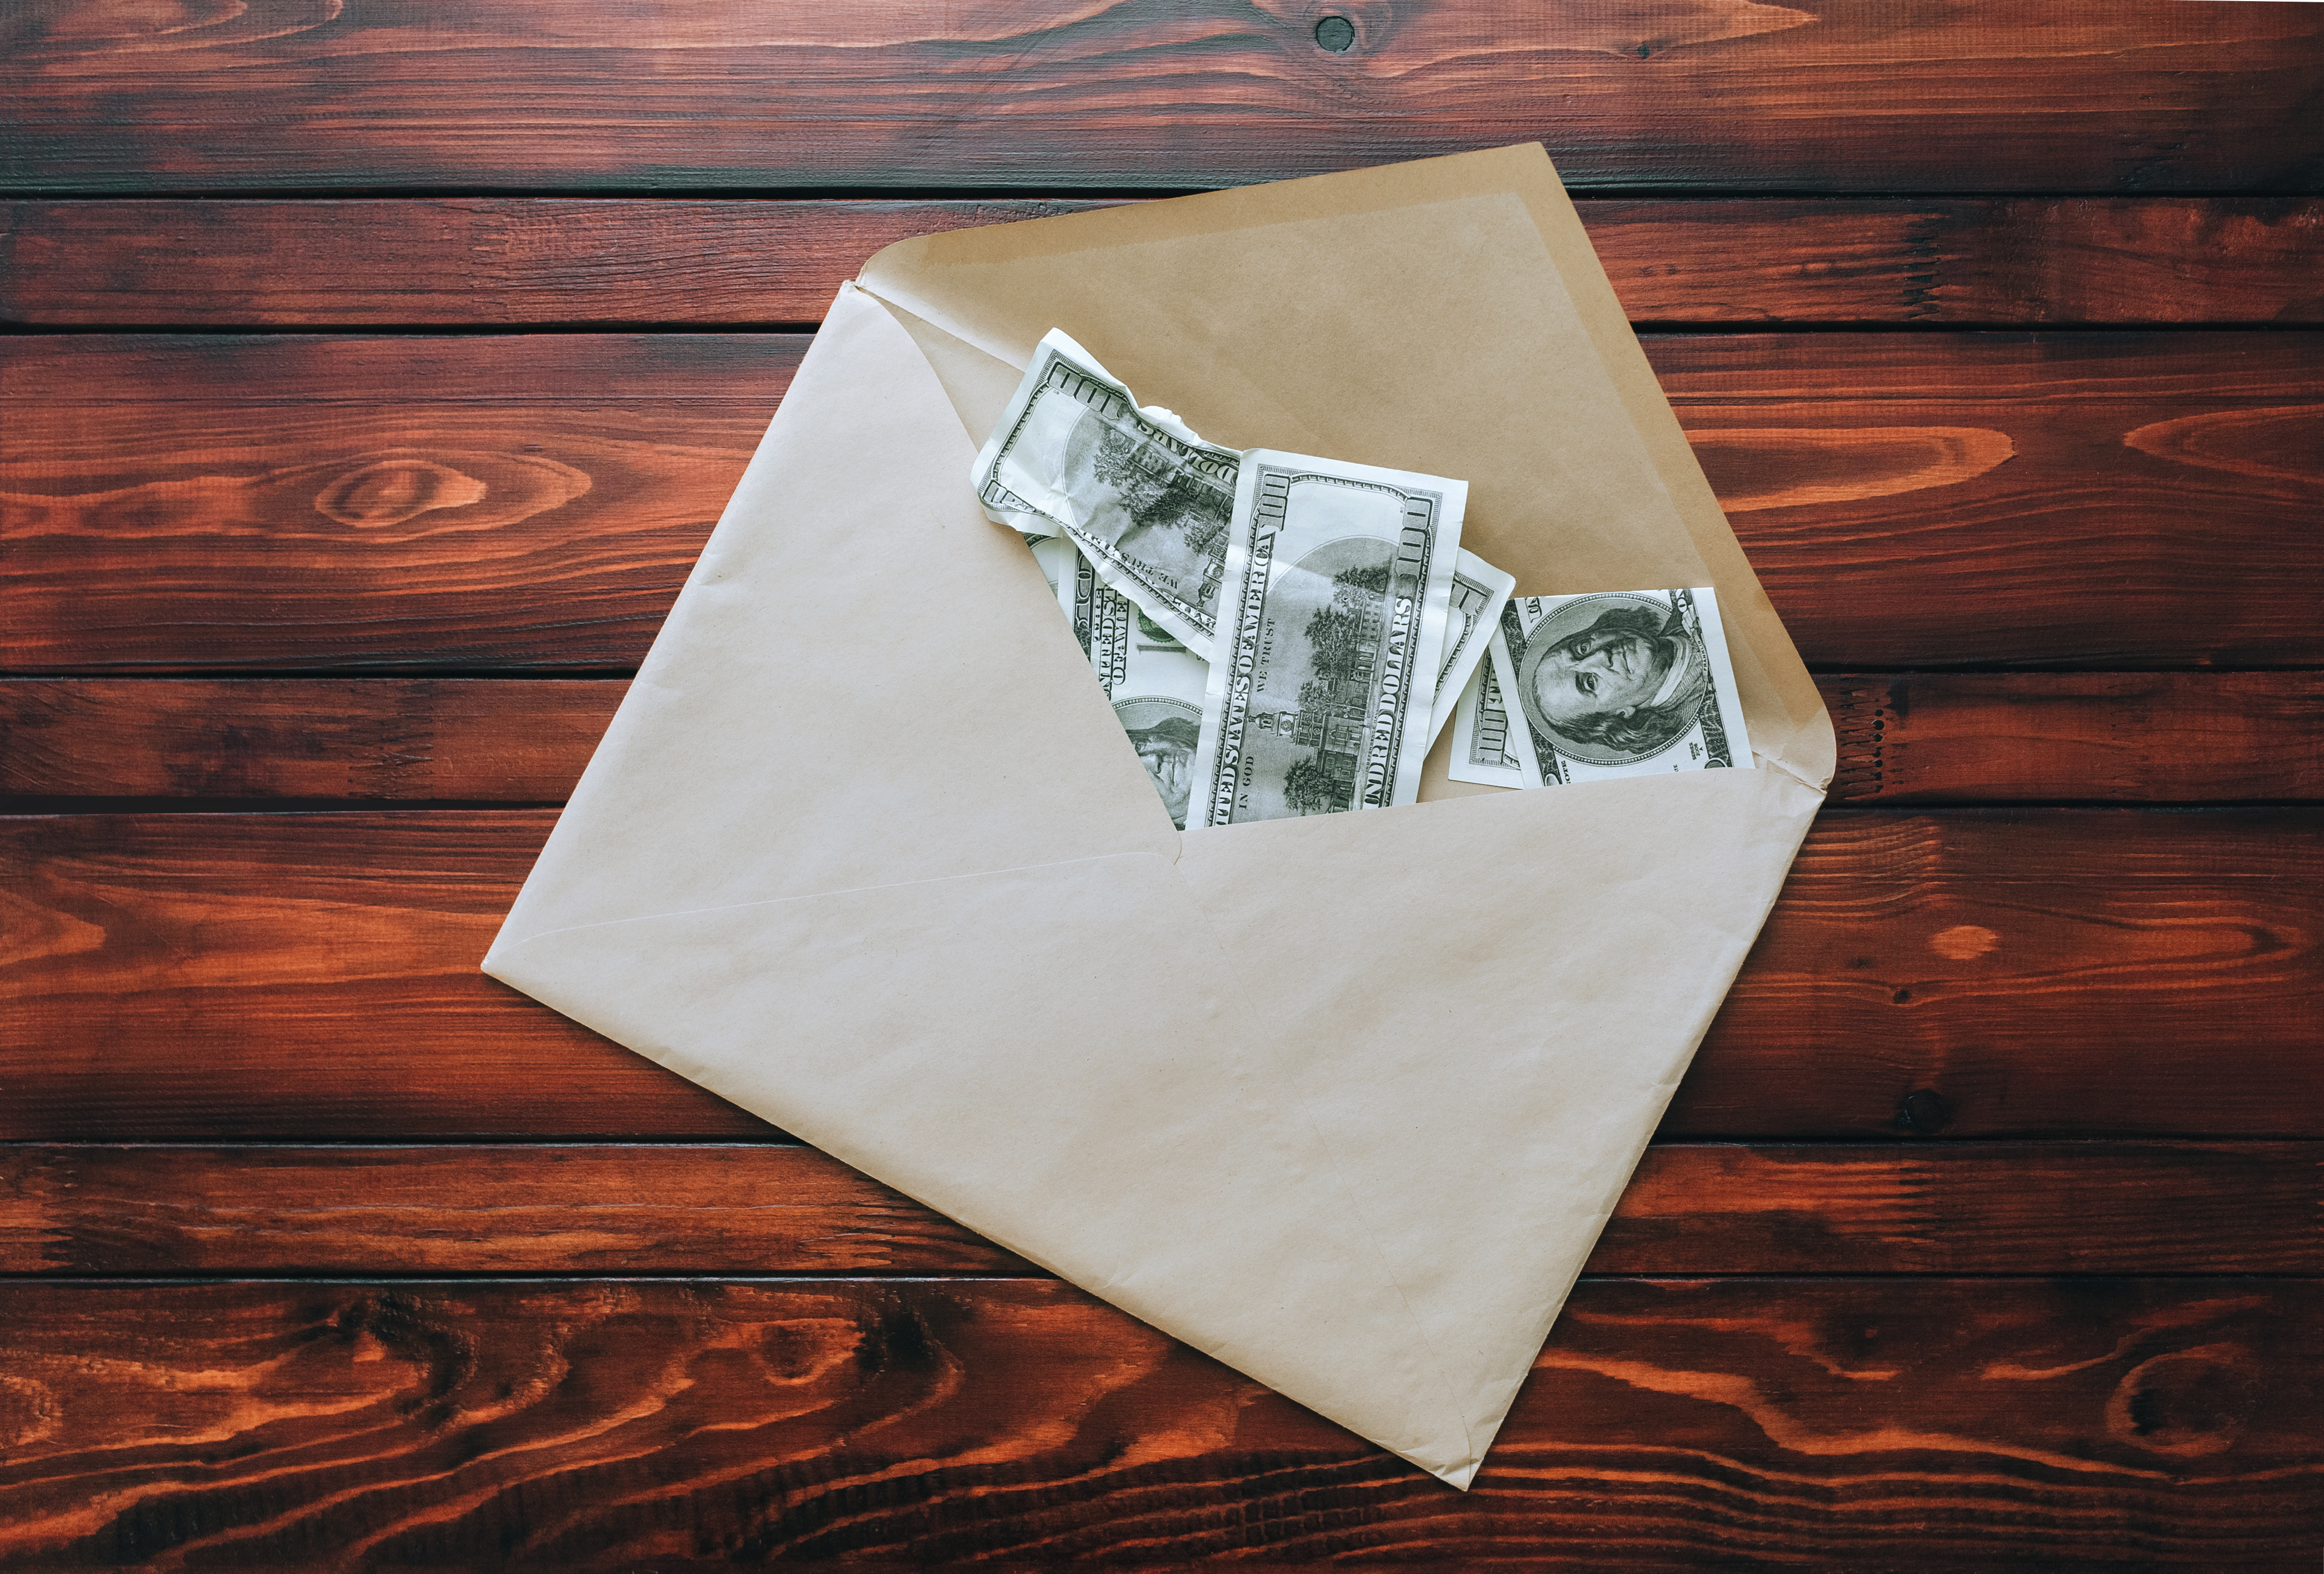 Une enveloppe contenant de l'argent | Source : Shutterstock